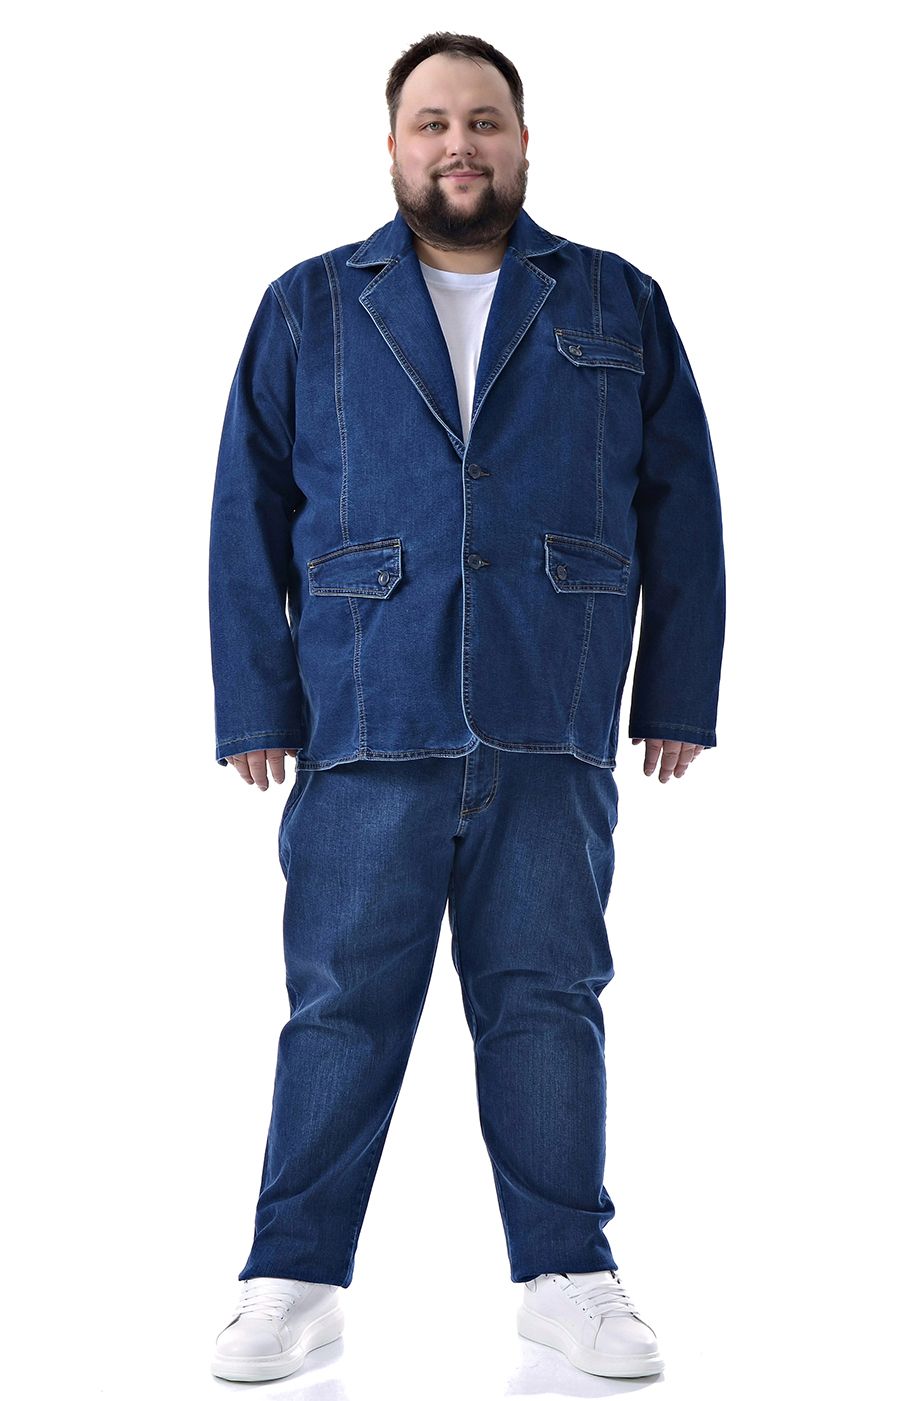 Джинсовый синий пиджак большого размера